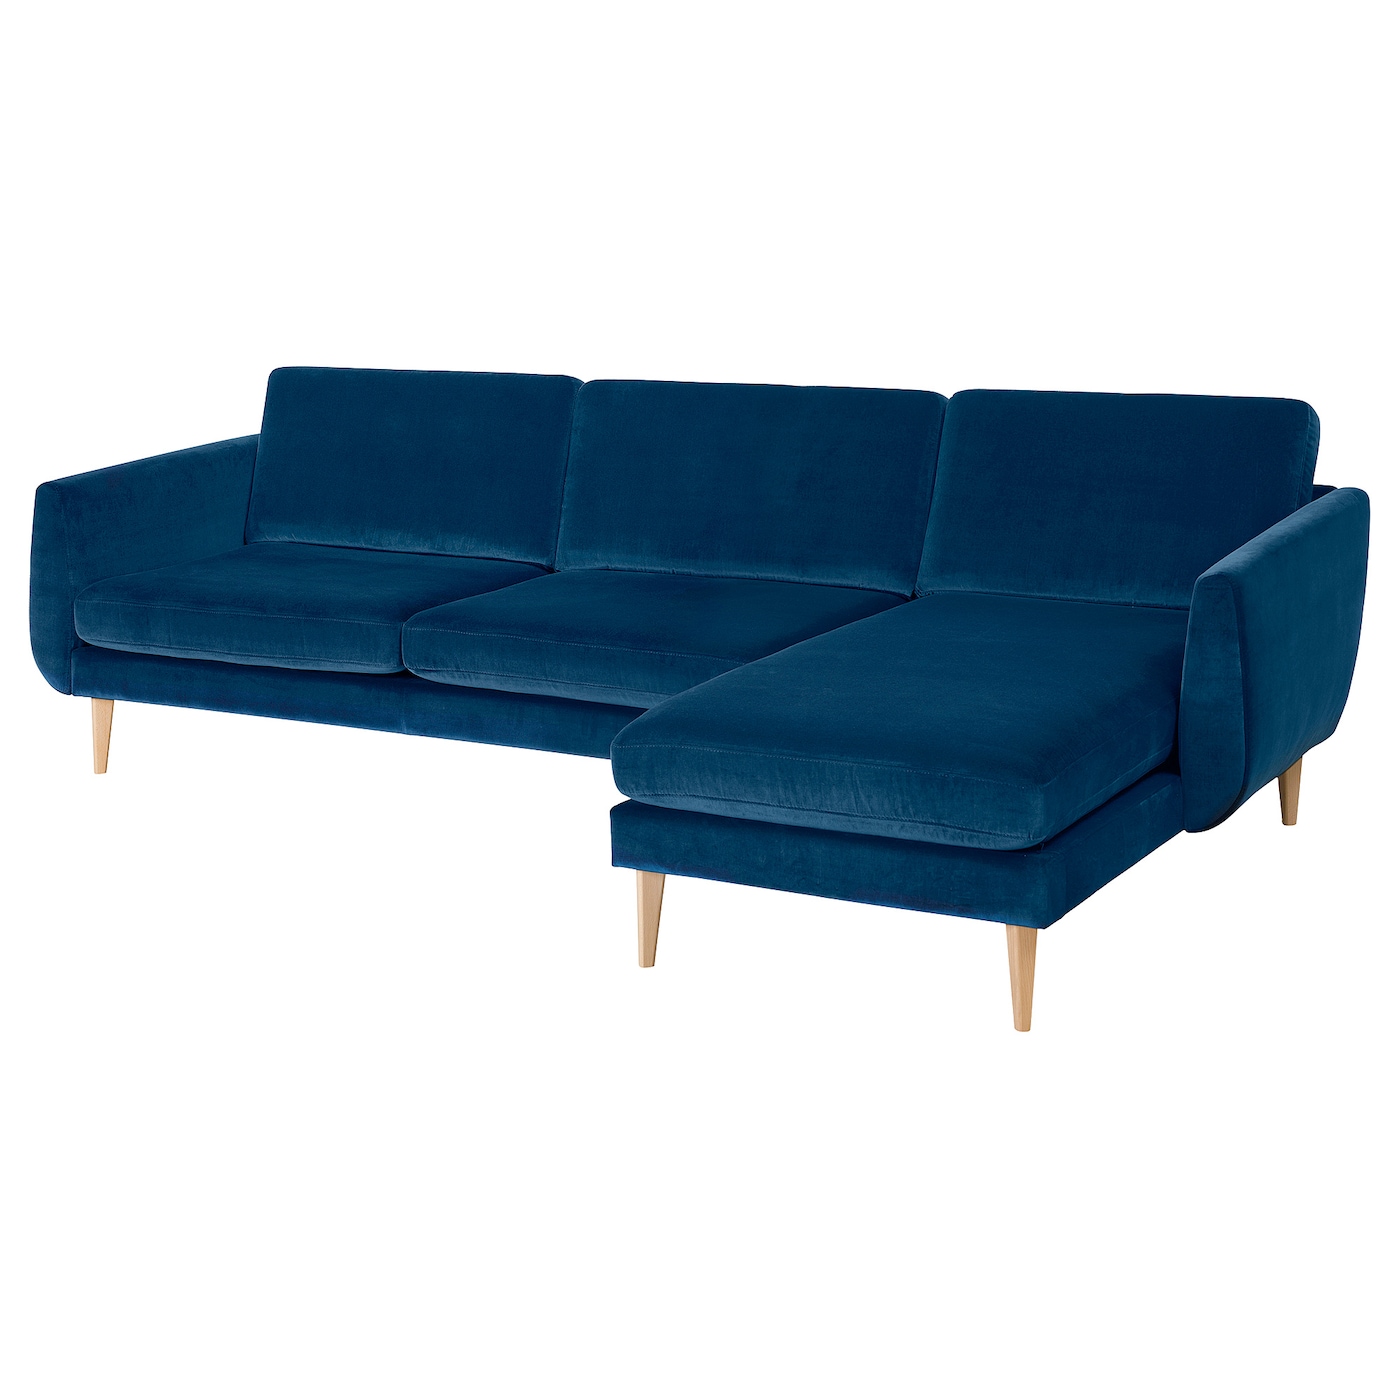 СМЕДСТОРП 4-местный диван + диван, Дюпарп/темно-зелено-синий дуб SMEDSTORP IKEA